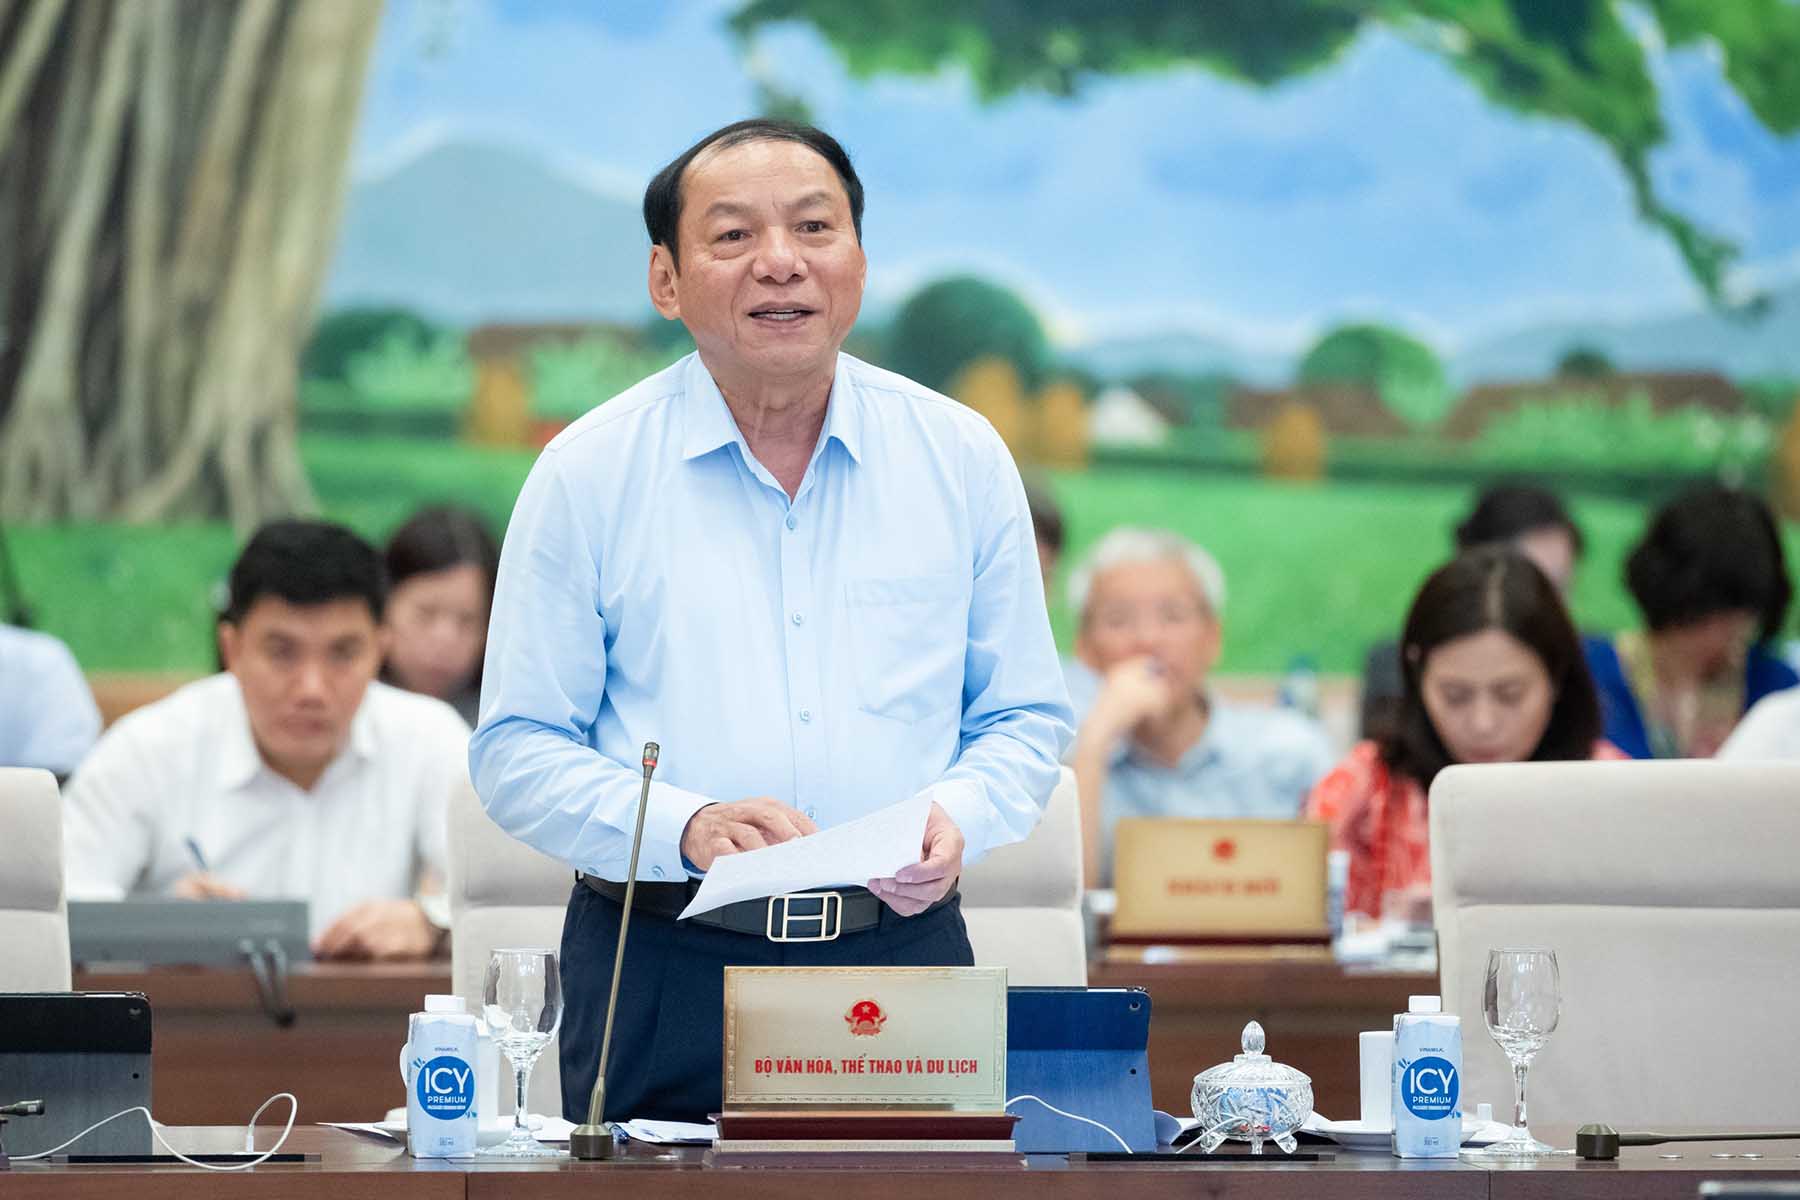 Bộ trưởng Nguyễn Văn Hùng báo cáo tại phiên họp. Ảnh: Phạm Thắng